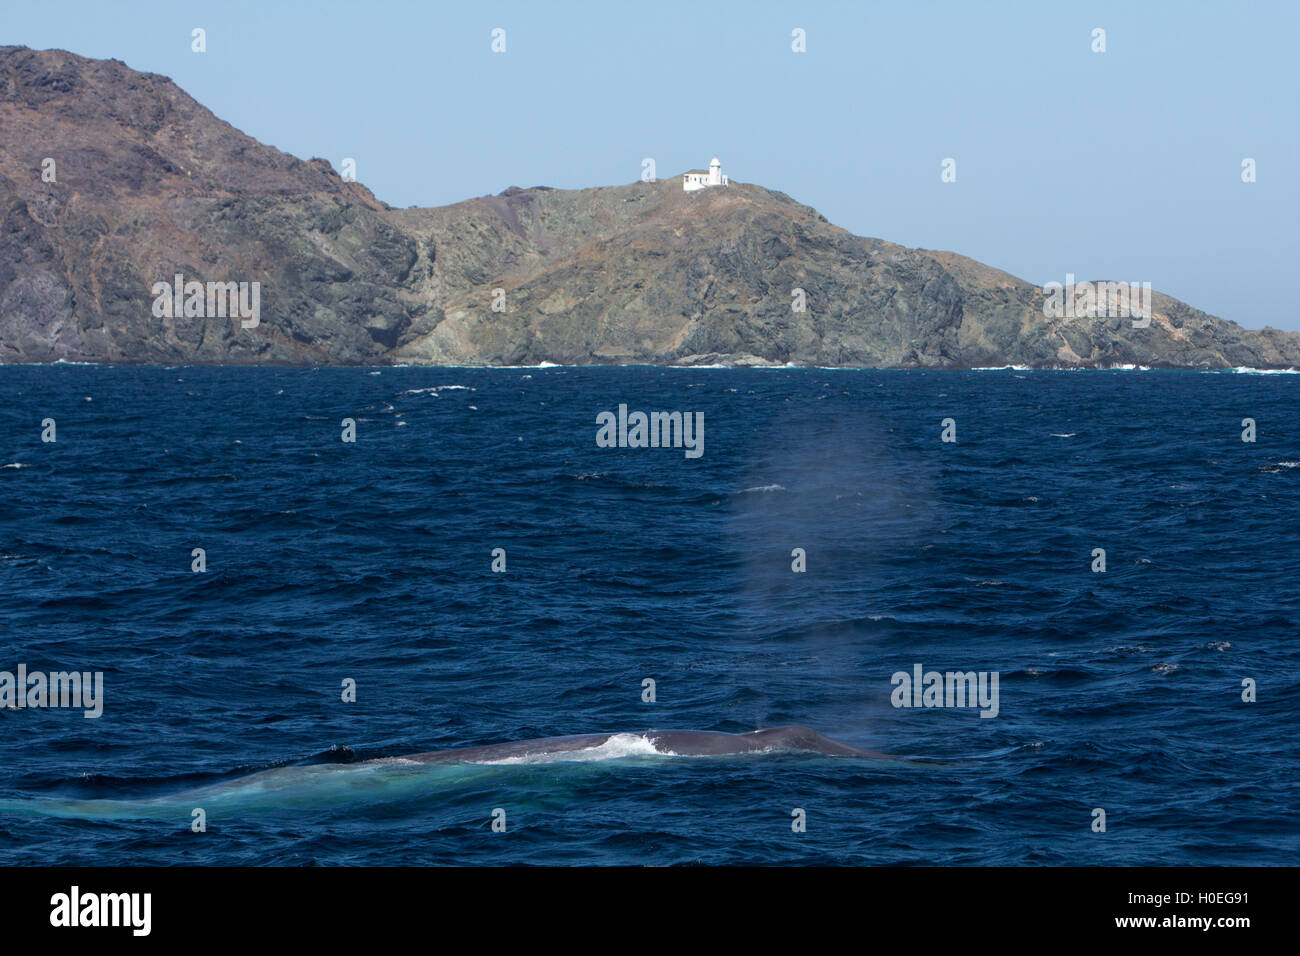 La ballena azul surgen de un faro en la Isla de Santa Margarita, en la península de Baja California, México Foto de stock